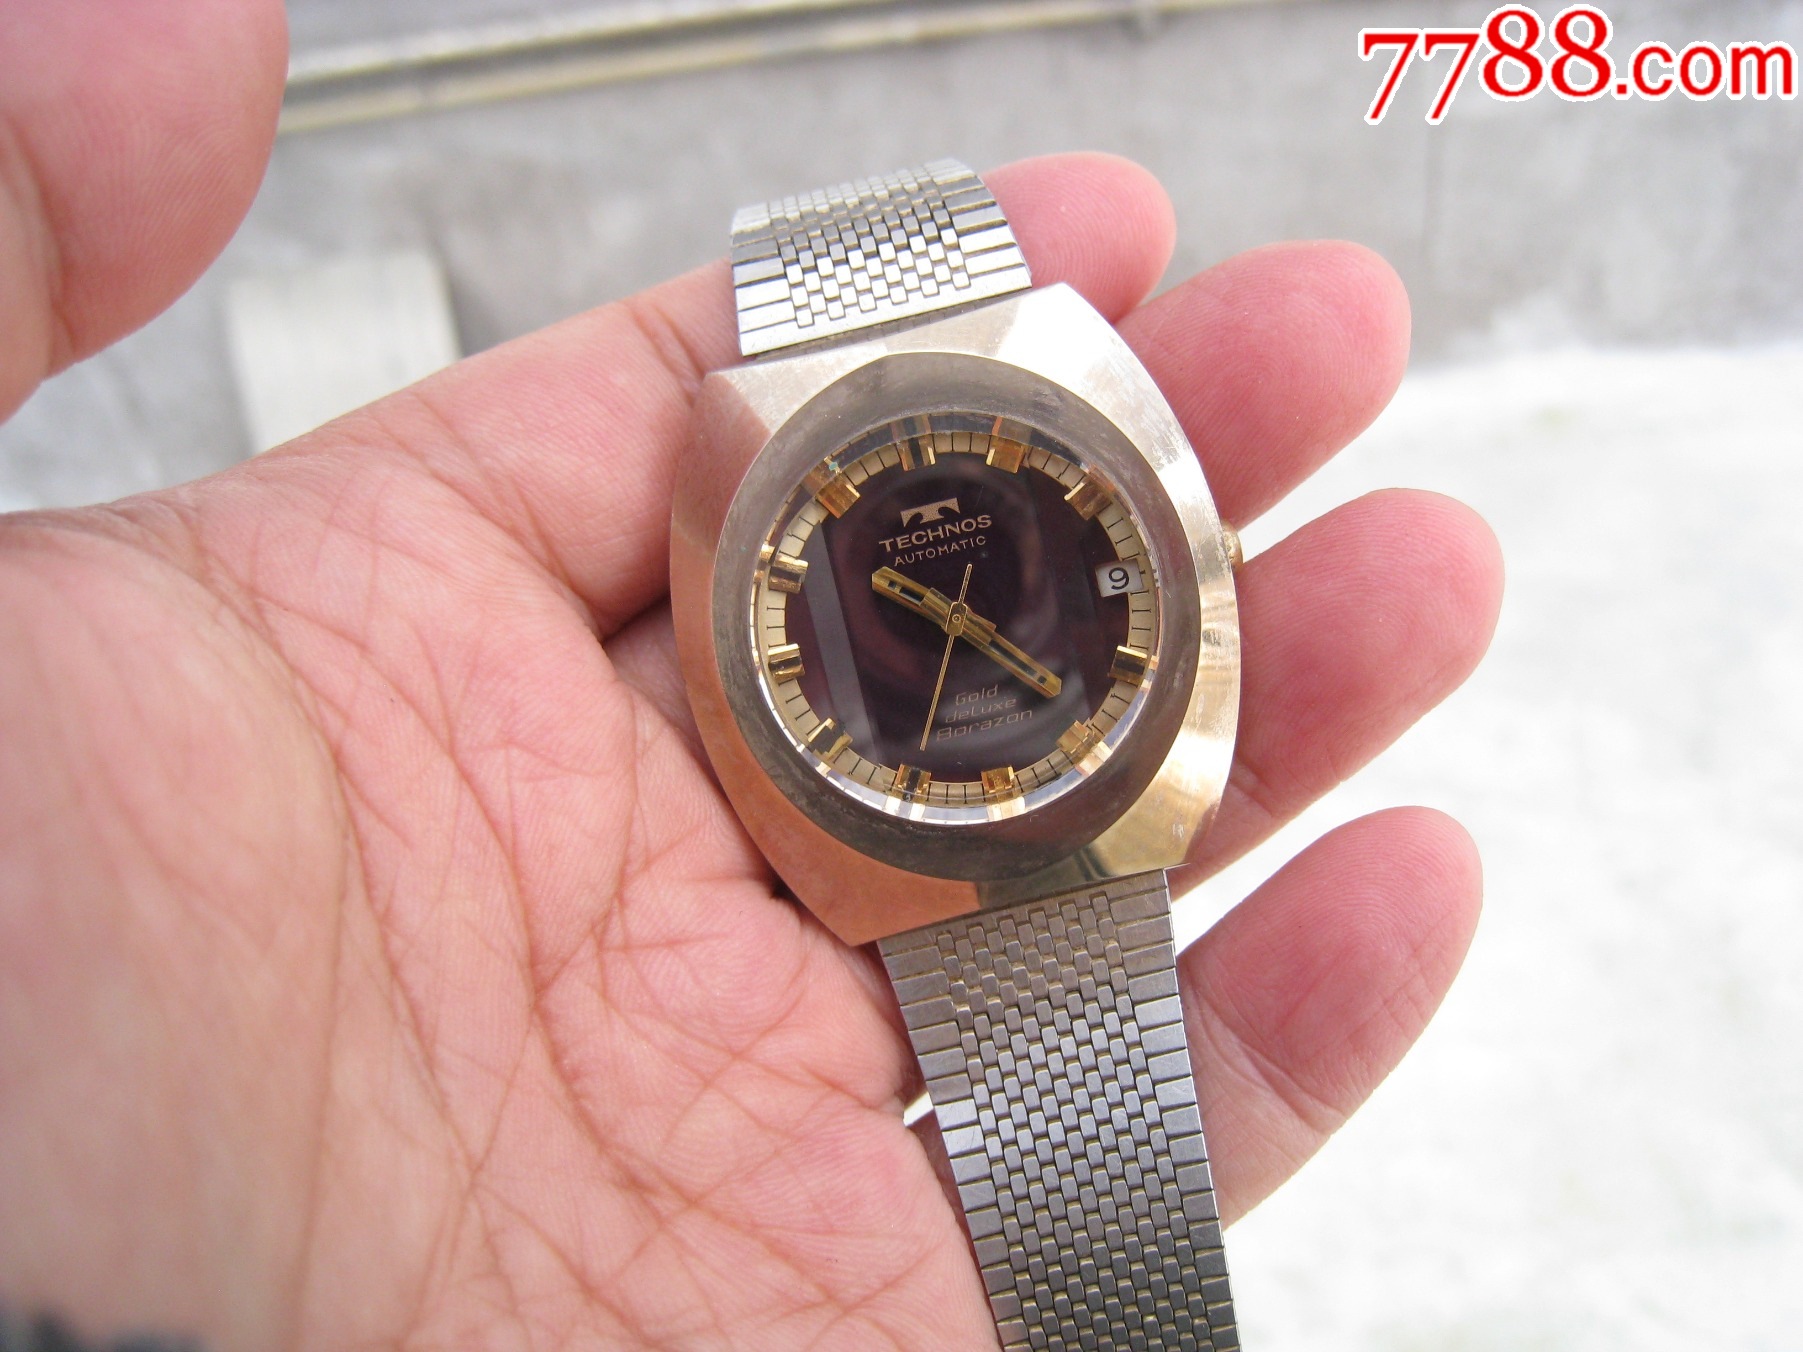 298元的路威天尼手表图片